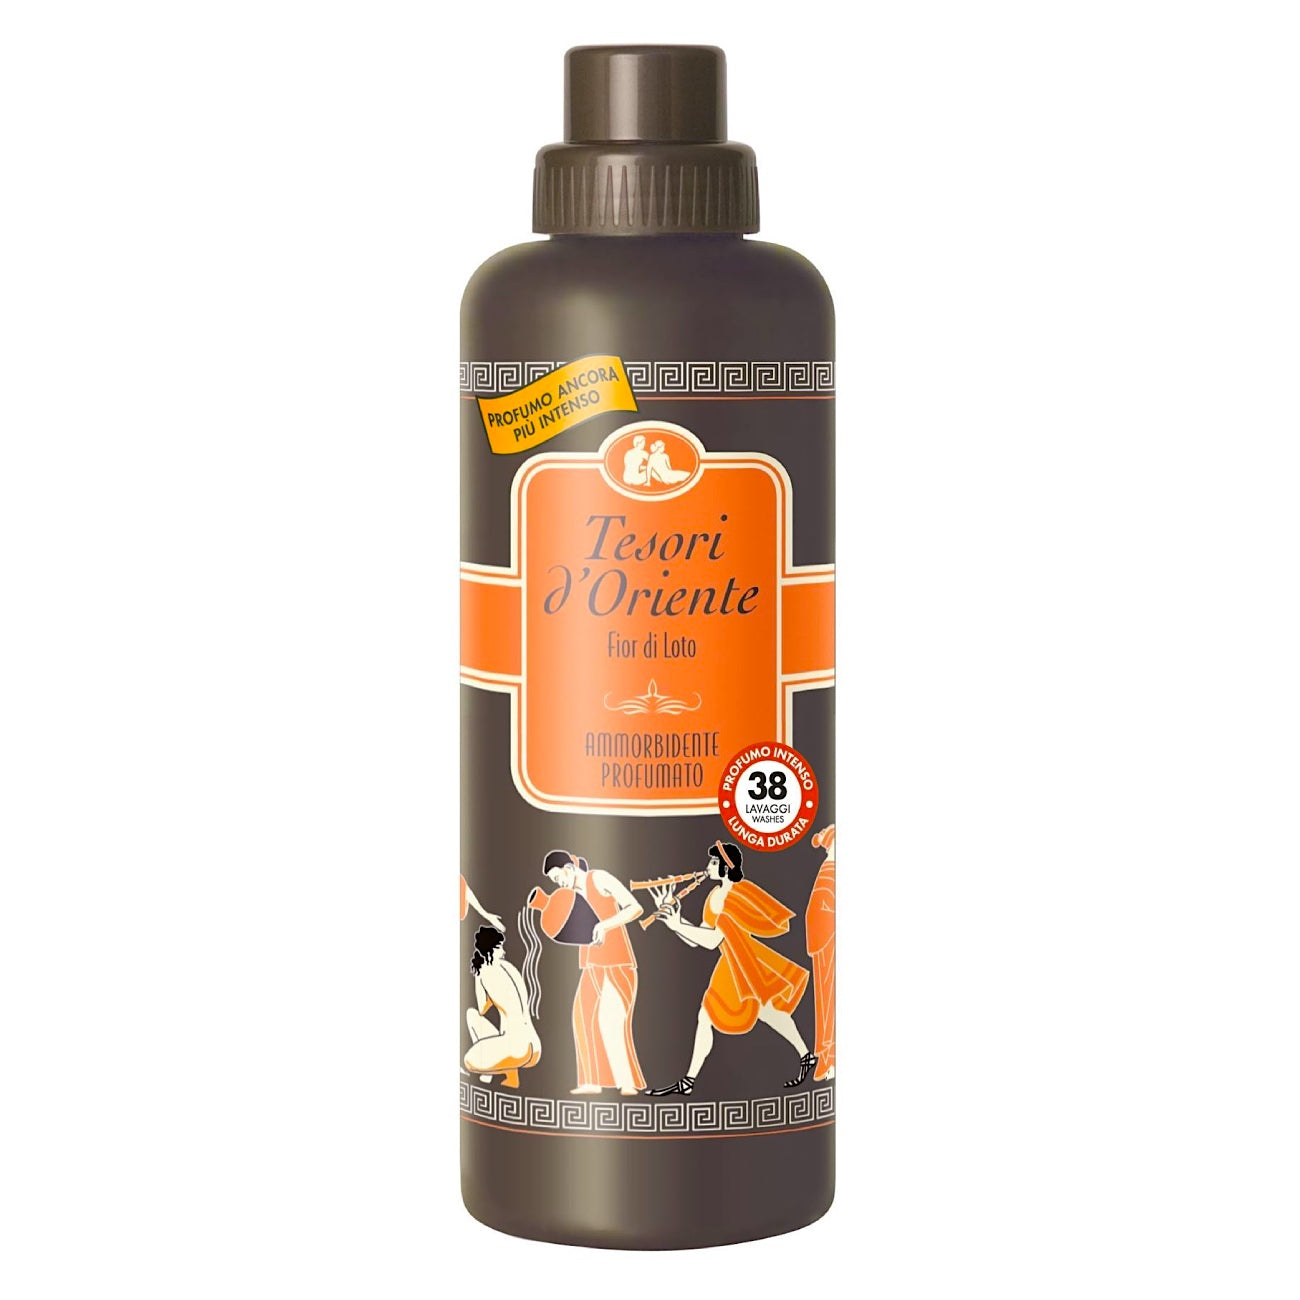 TESORI d'ORIENTE liquid soap, 300 ml – MOOP